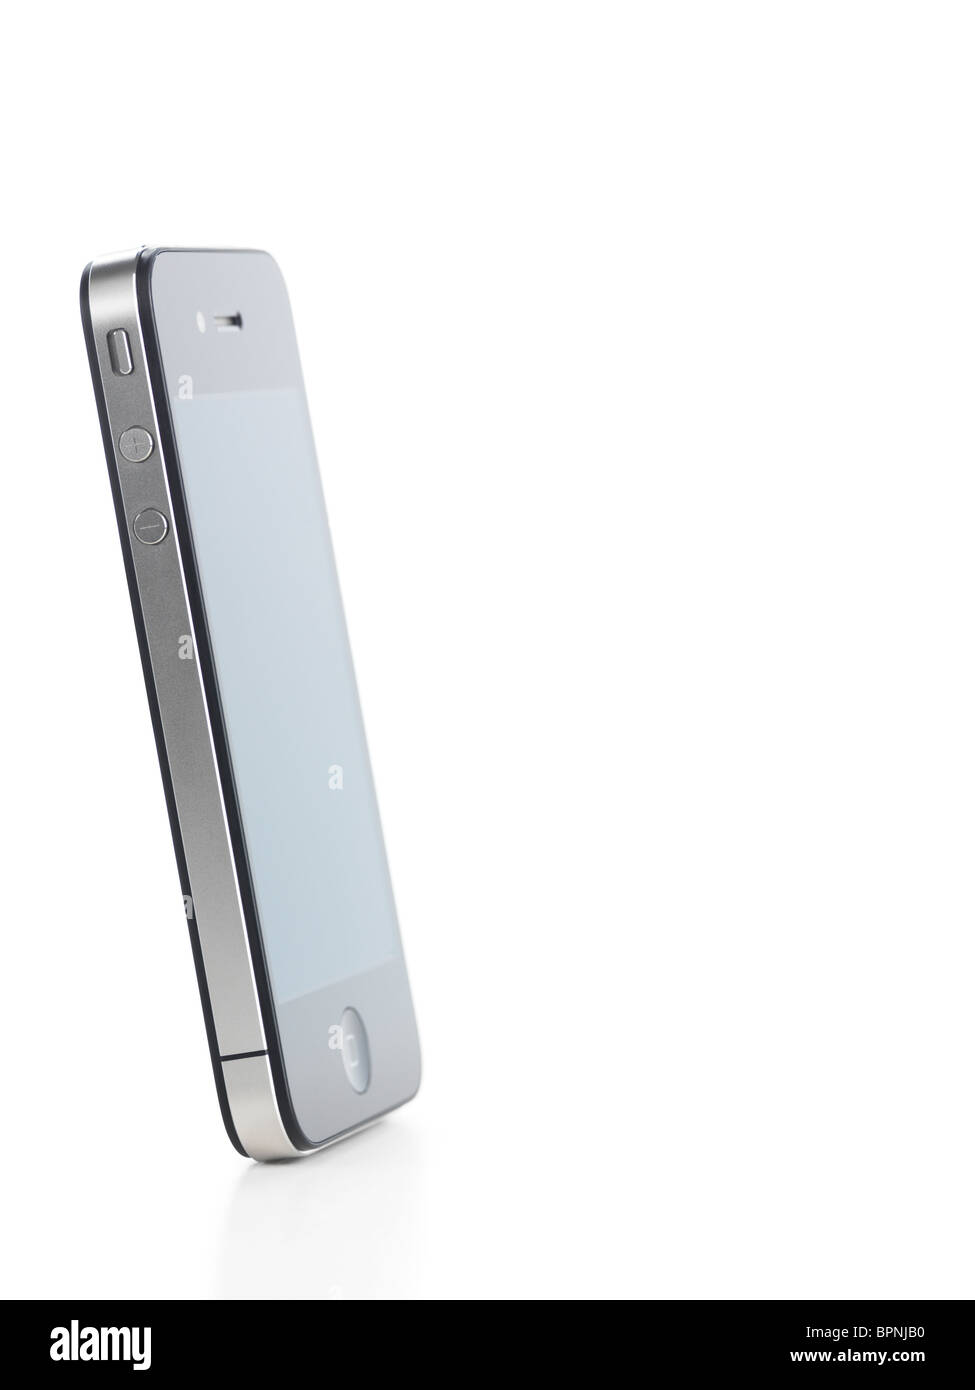 Apple iPhone 4 smartphone vista laterale isolata su sfondo bianco. Foto di qualità elevata. Foto Stock